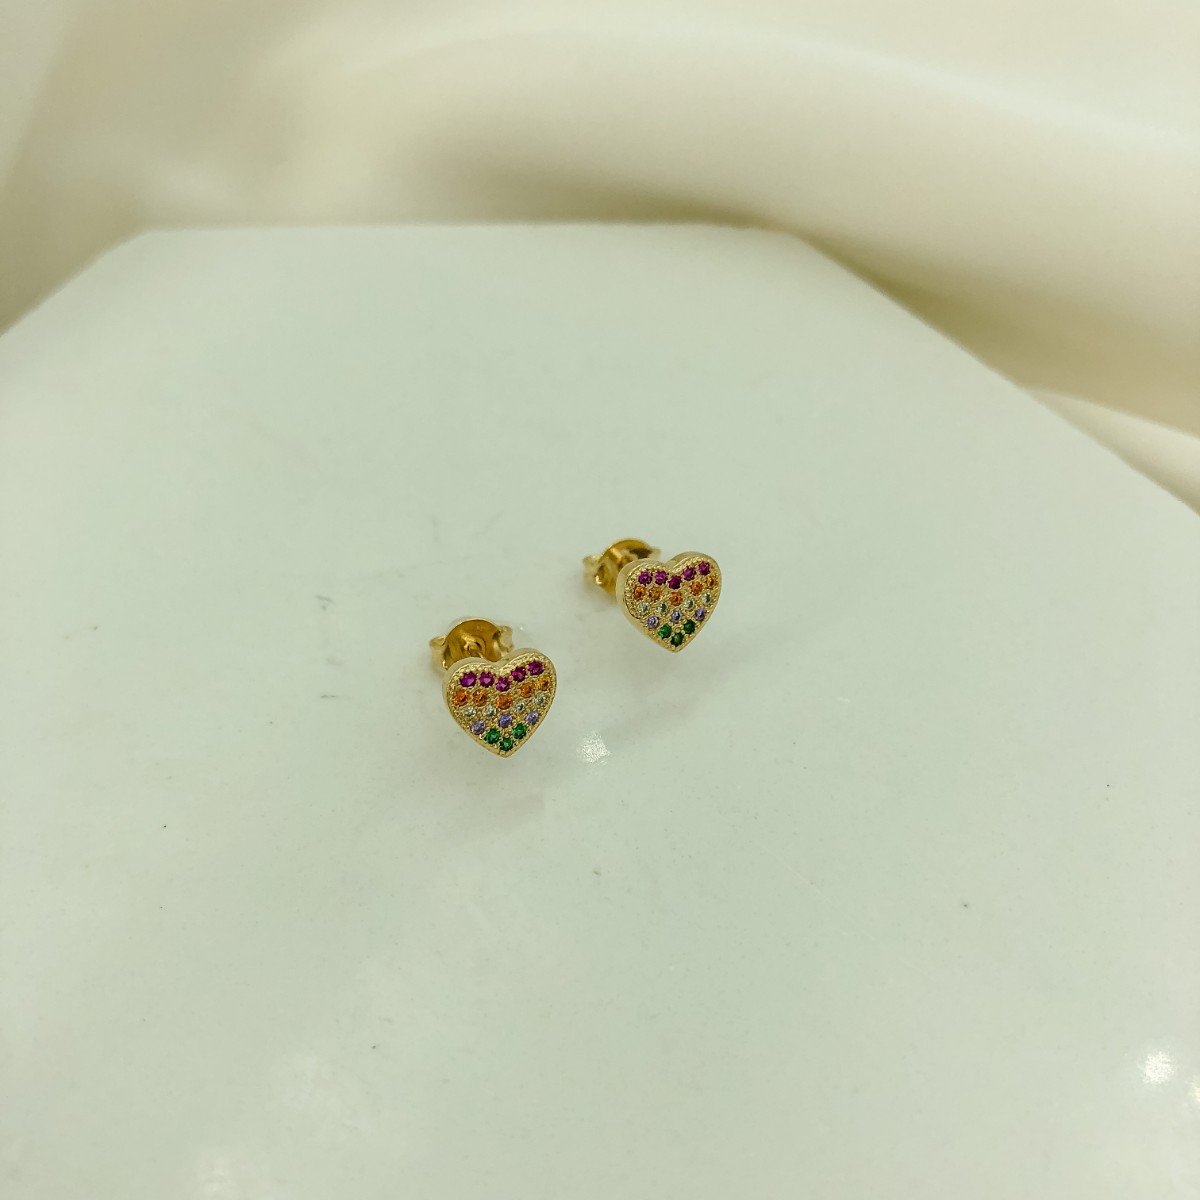 Brinco Coração Pequeno Cravejado de Zircônias Coloridas Banhado em Ouro 18k